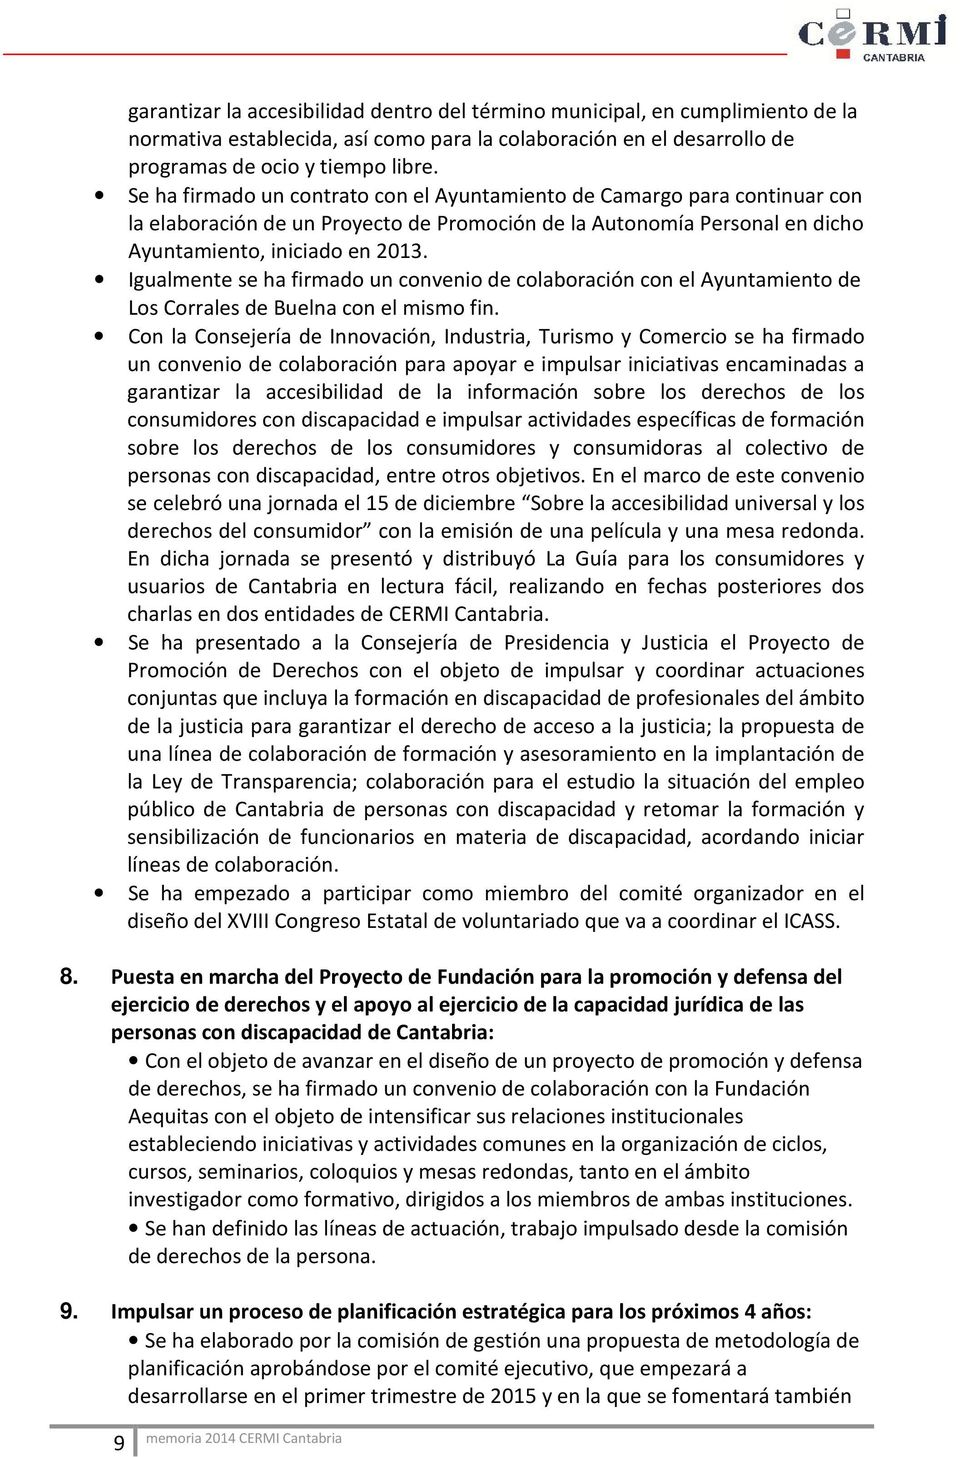 Igualmente se ha firmado un convenio de colaboración con el Ayuntamiento de Los Corrales de Buelna con el mismo fin.